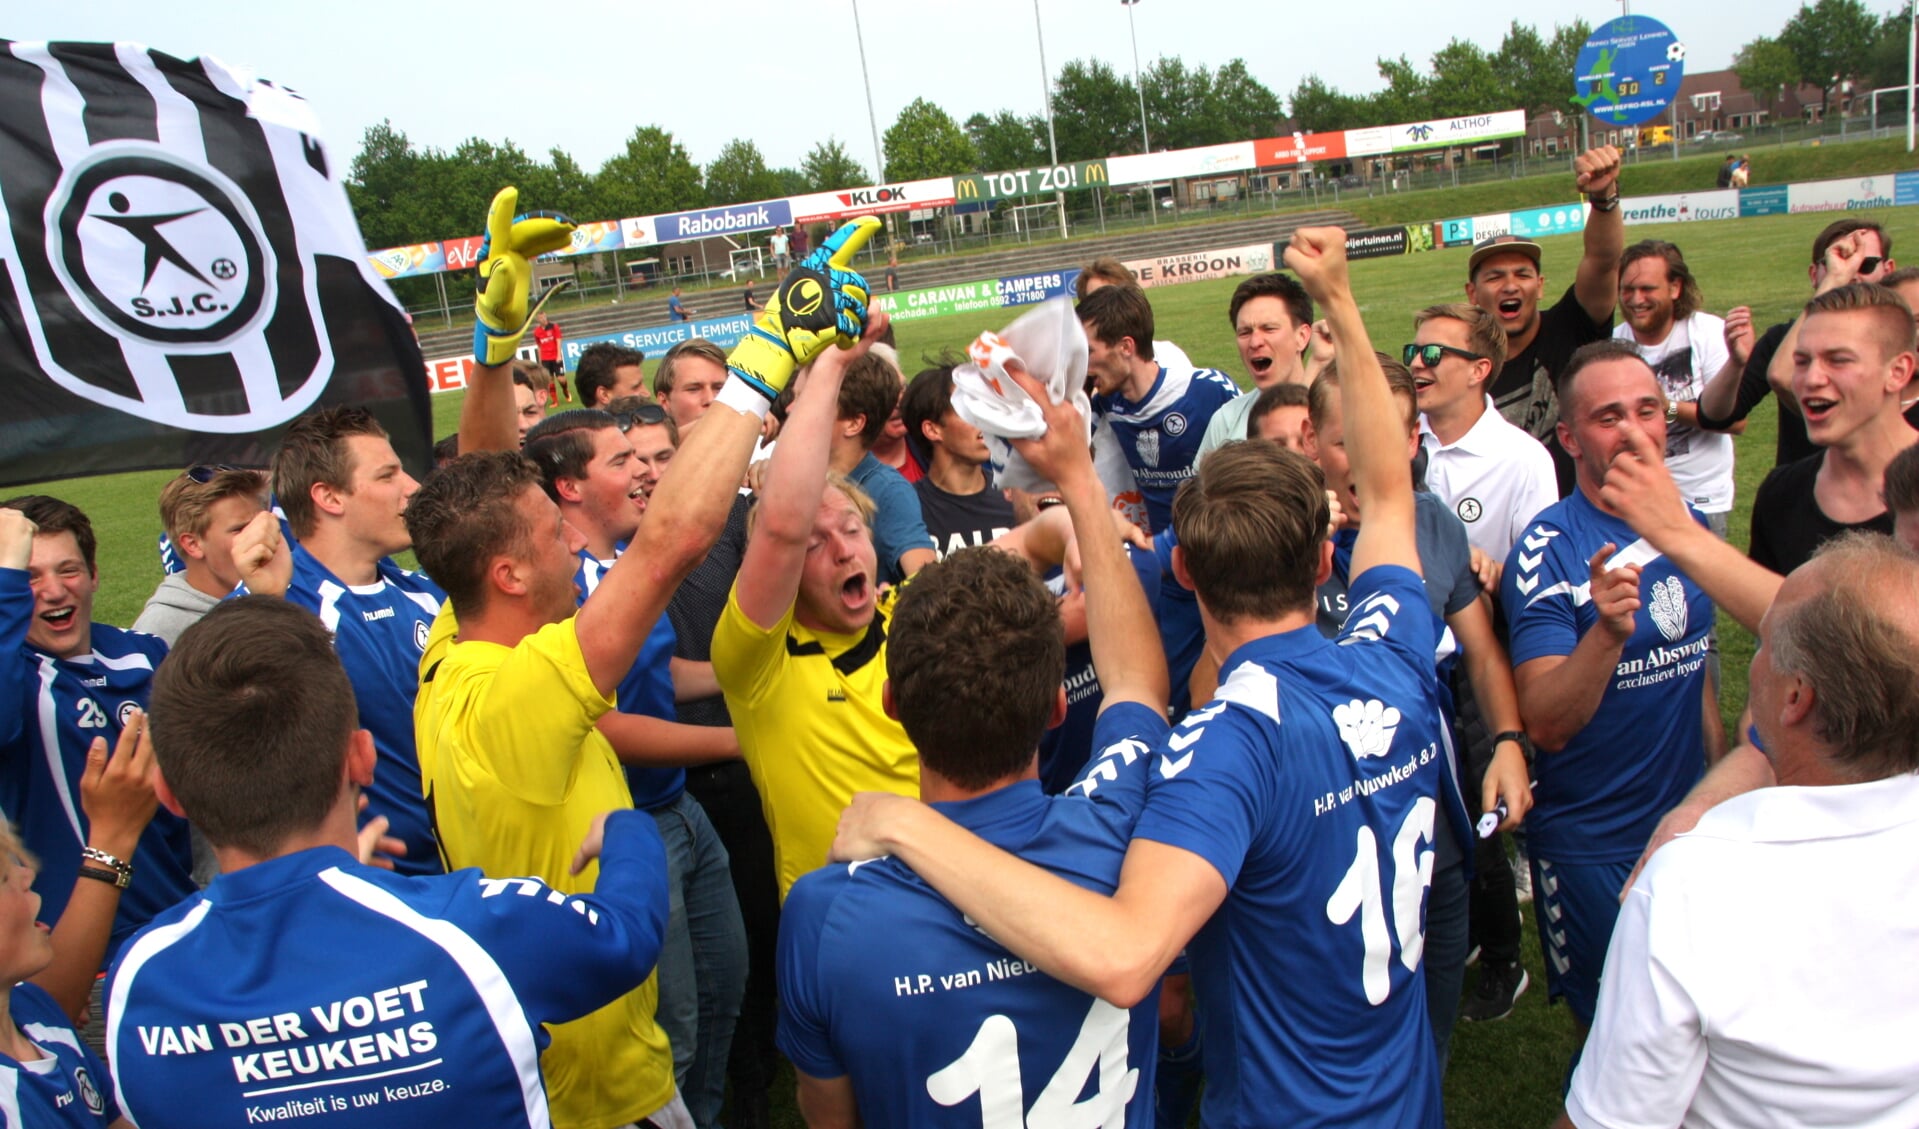 Sjaak Polak viert het kampioenschap te midden van meegereisde supportertjes. | Foto: Wim Siemerink